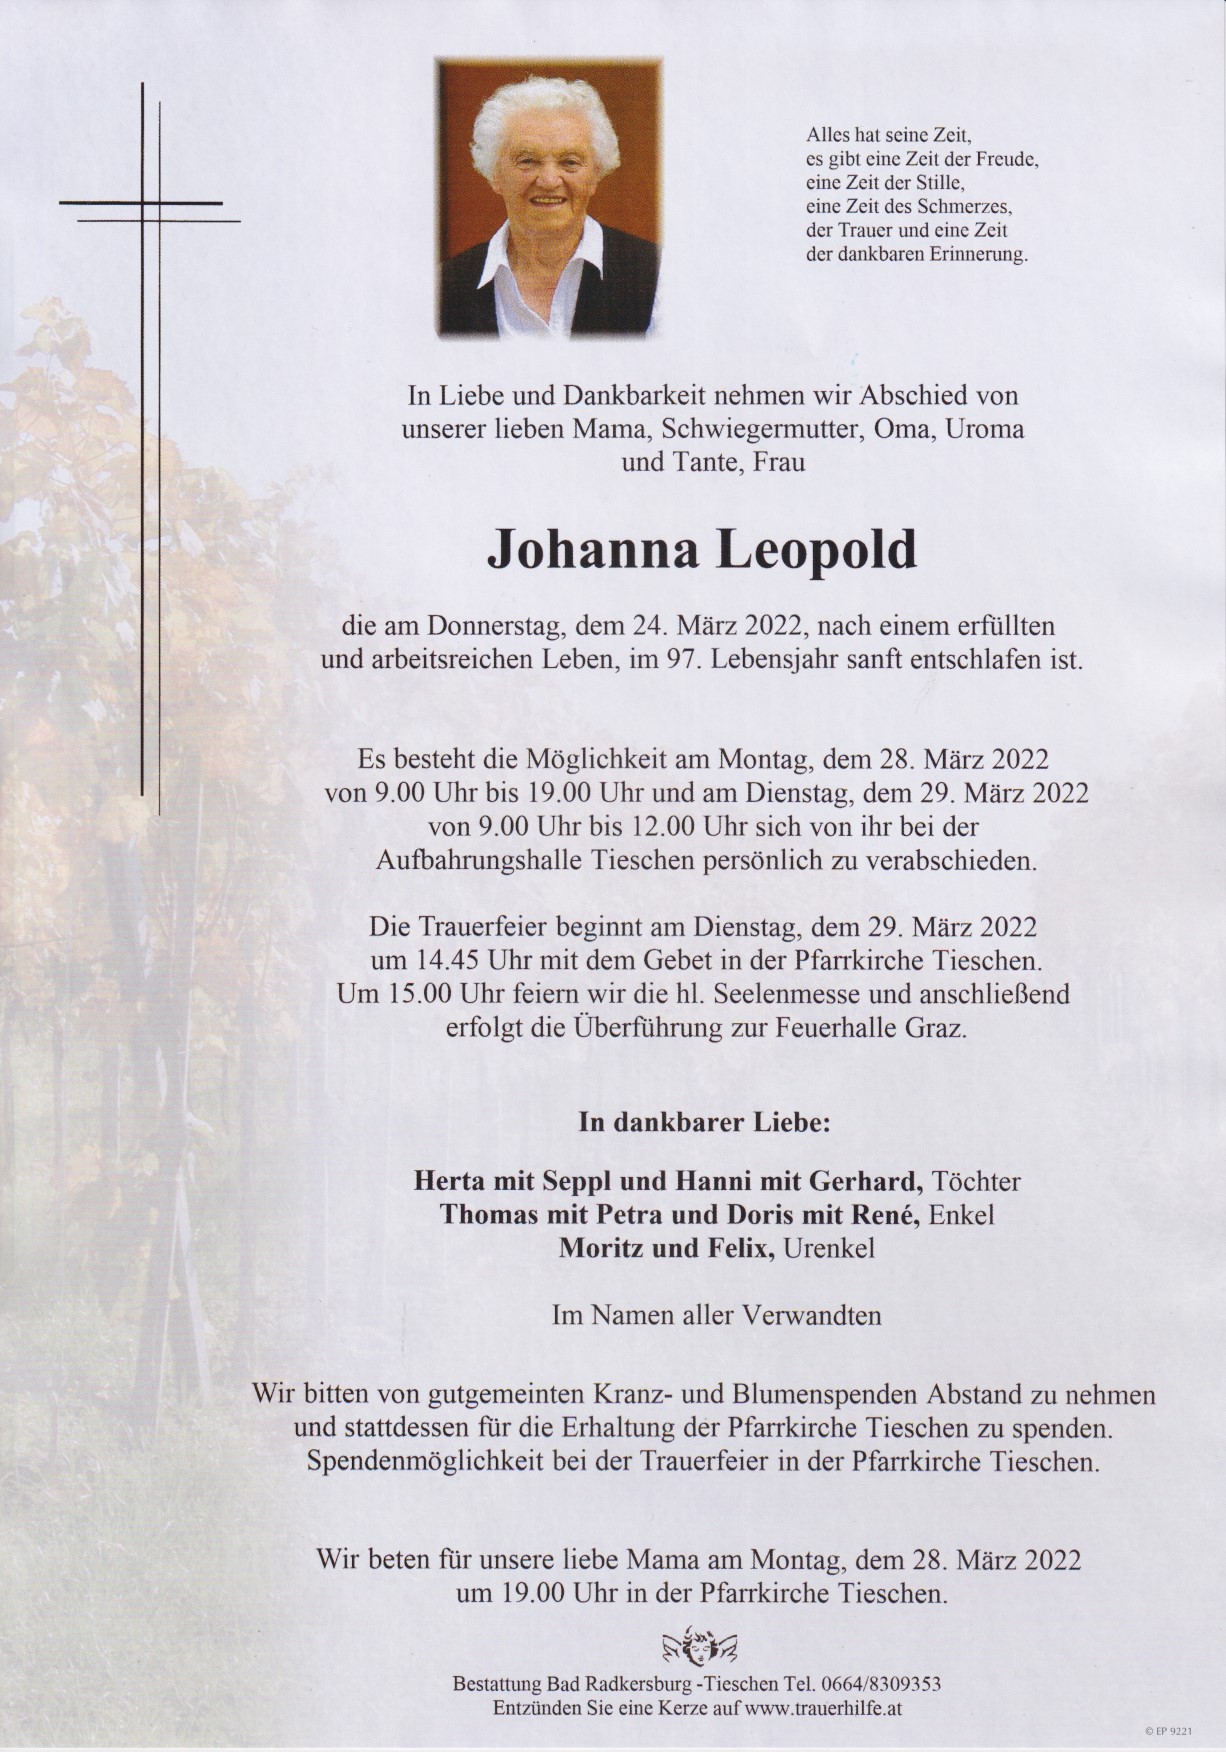 Johanna Leopold